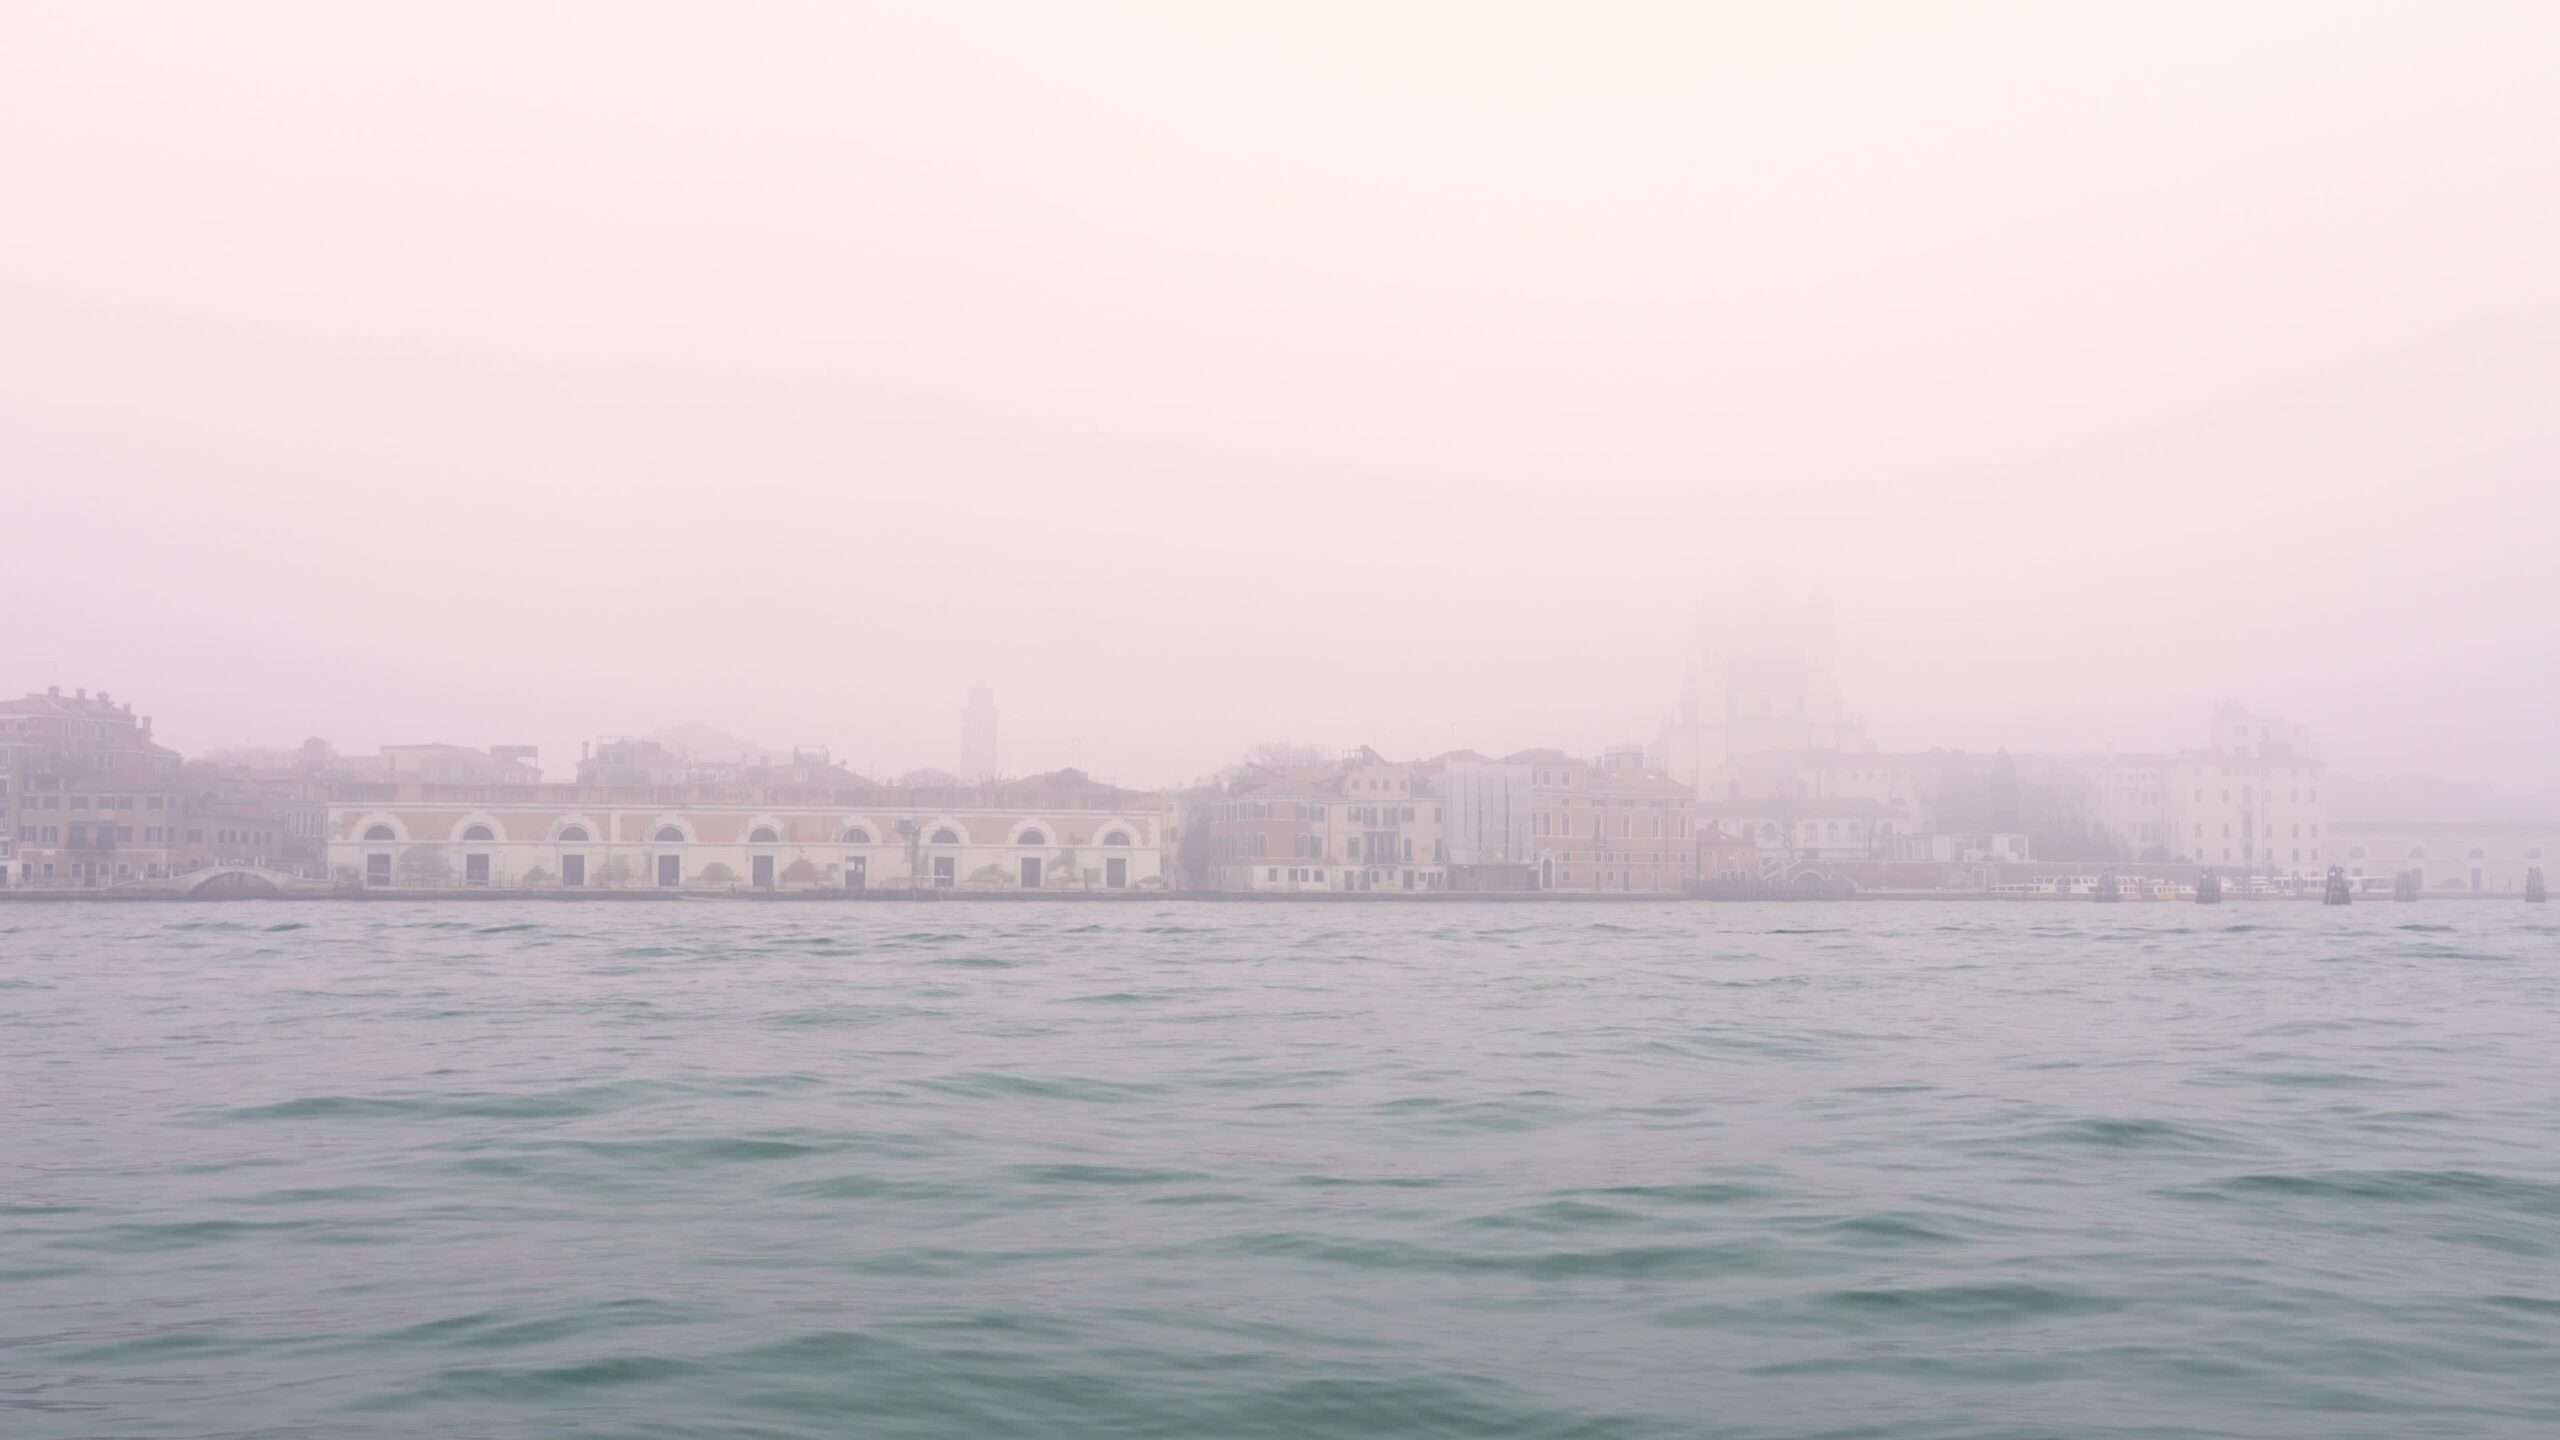 Acqua lagunare veneziana contro il centro storico nella nebbia